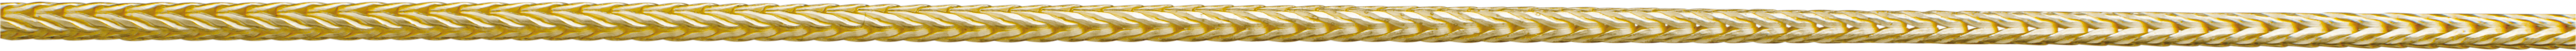 vossestaart ketting goud 750/-gg Ø 1,50mm